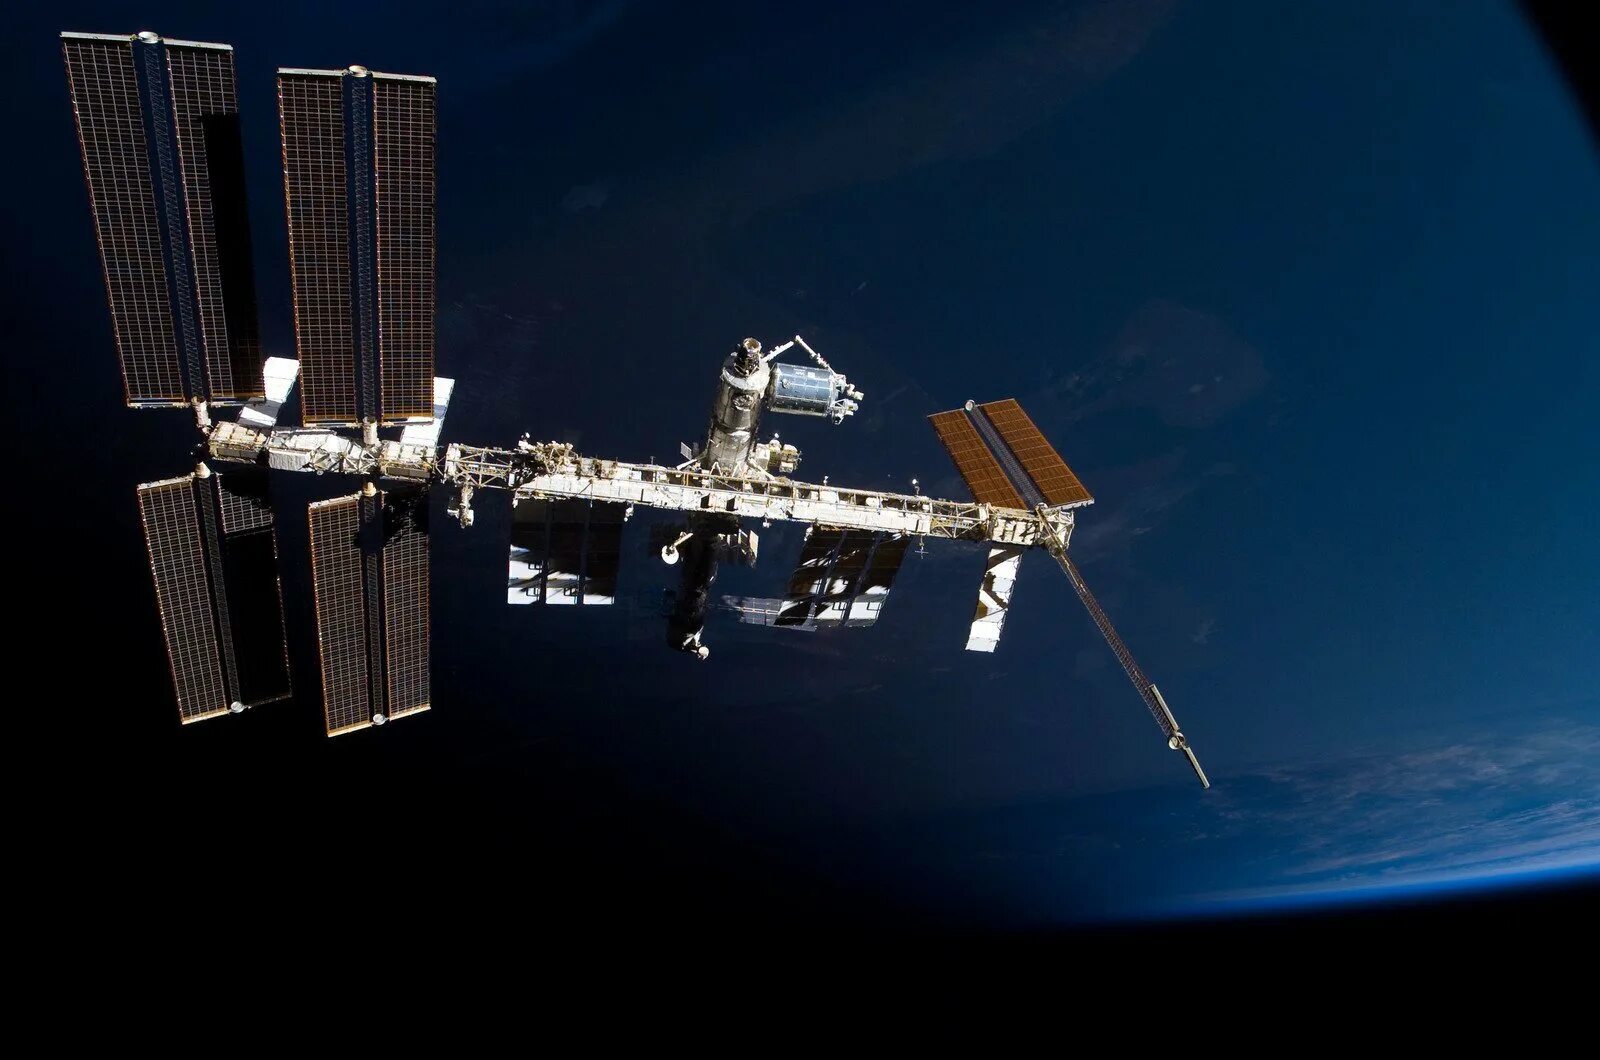 Как называется самый большой космический аппарат. Космическая станция МКС. Спутник НАСА станция МКС. Космическая орбитальная станция мир. Атлантис космический аппарат.